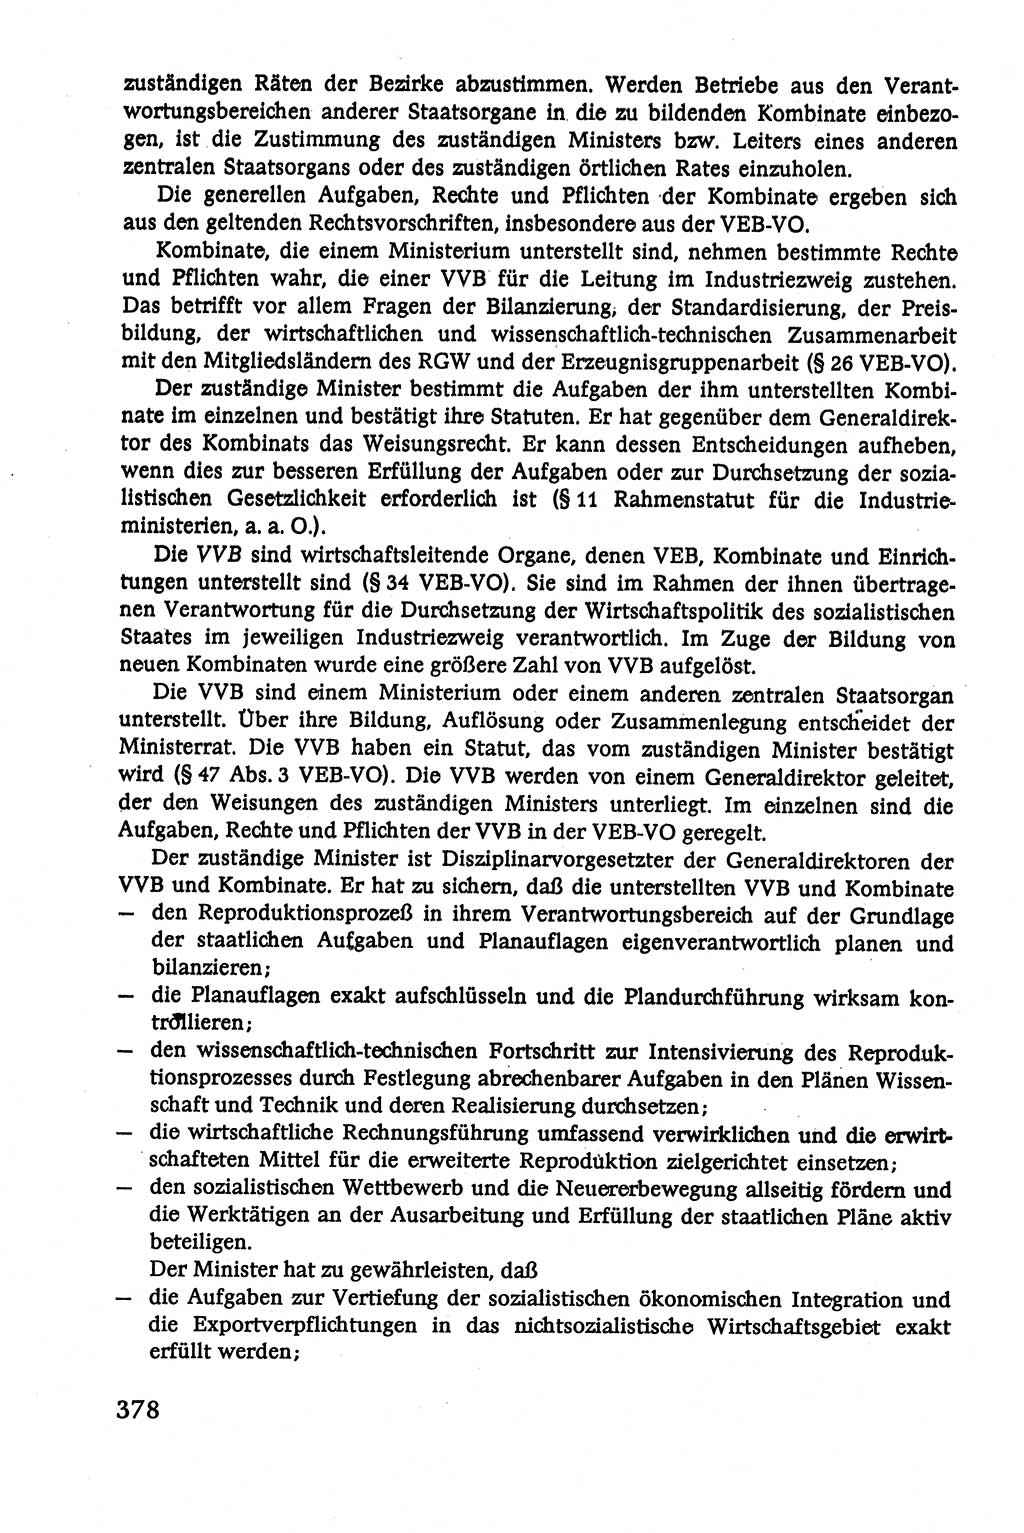 Verwaltungsrecht [Deutsche Demokratische Republik (DDR)], Lehrbuch 1979, Seite 378 (Verw.-R. DDR Lb. 1979, S. 378)